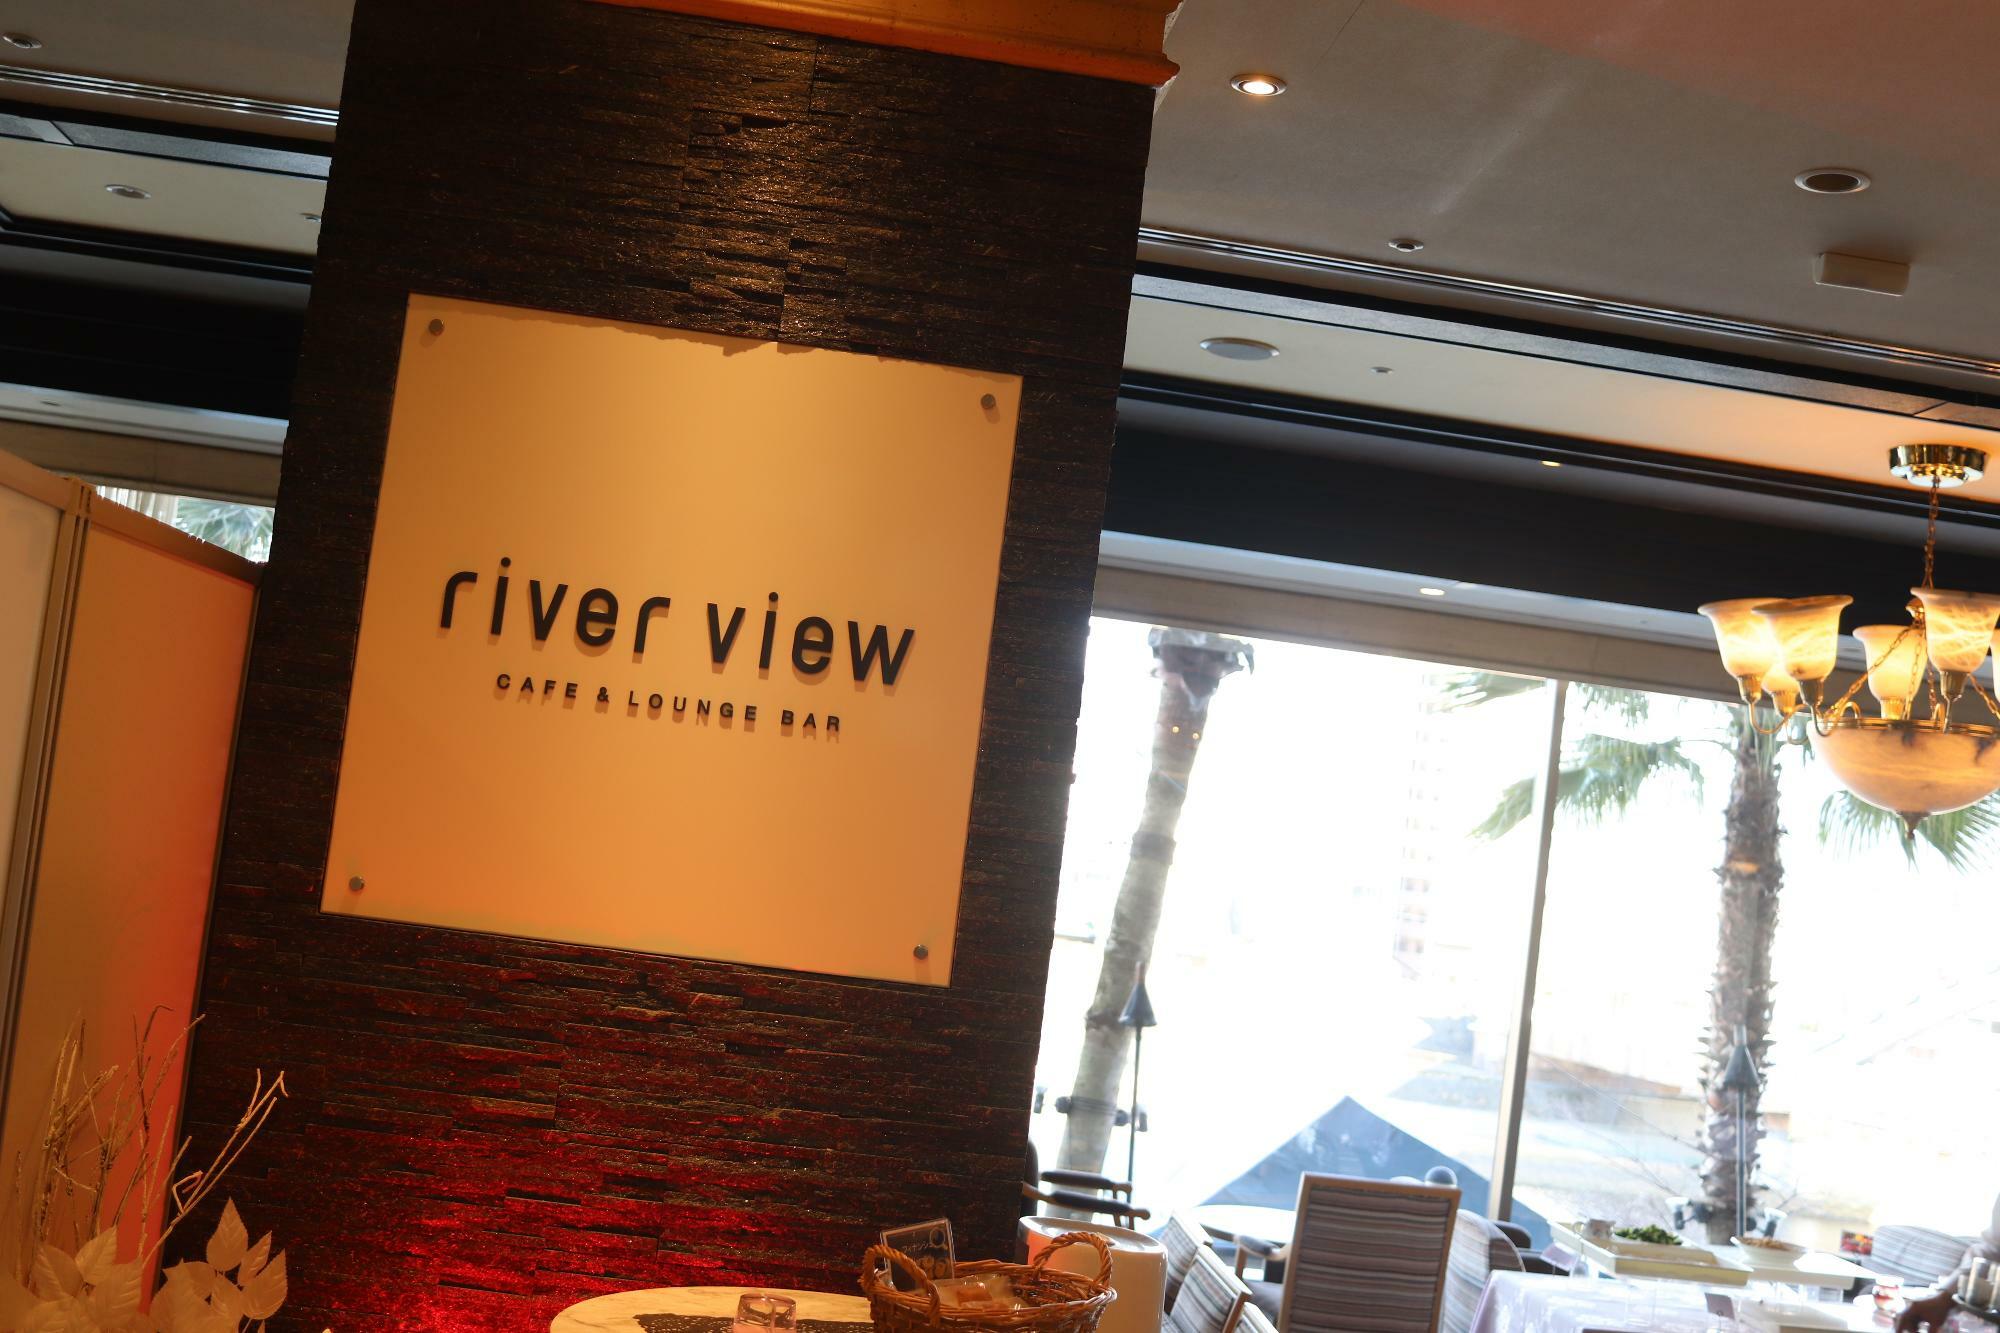 ホテル2階のカフェ＆ラウンジバー「river view」さん